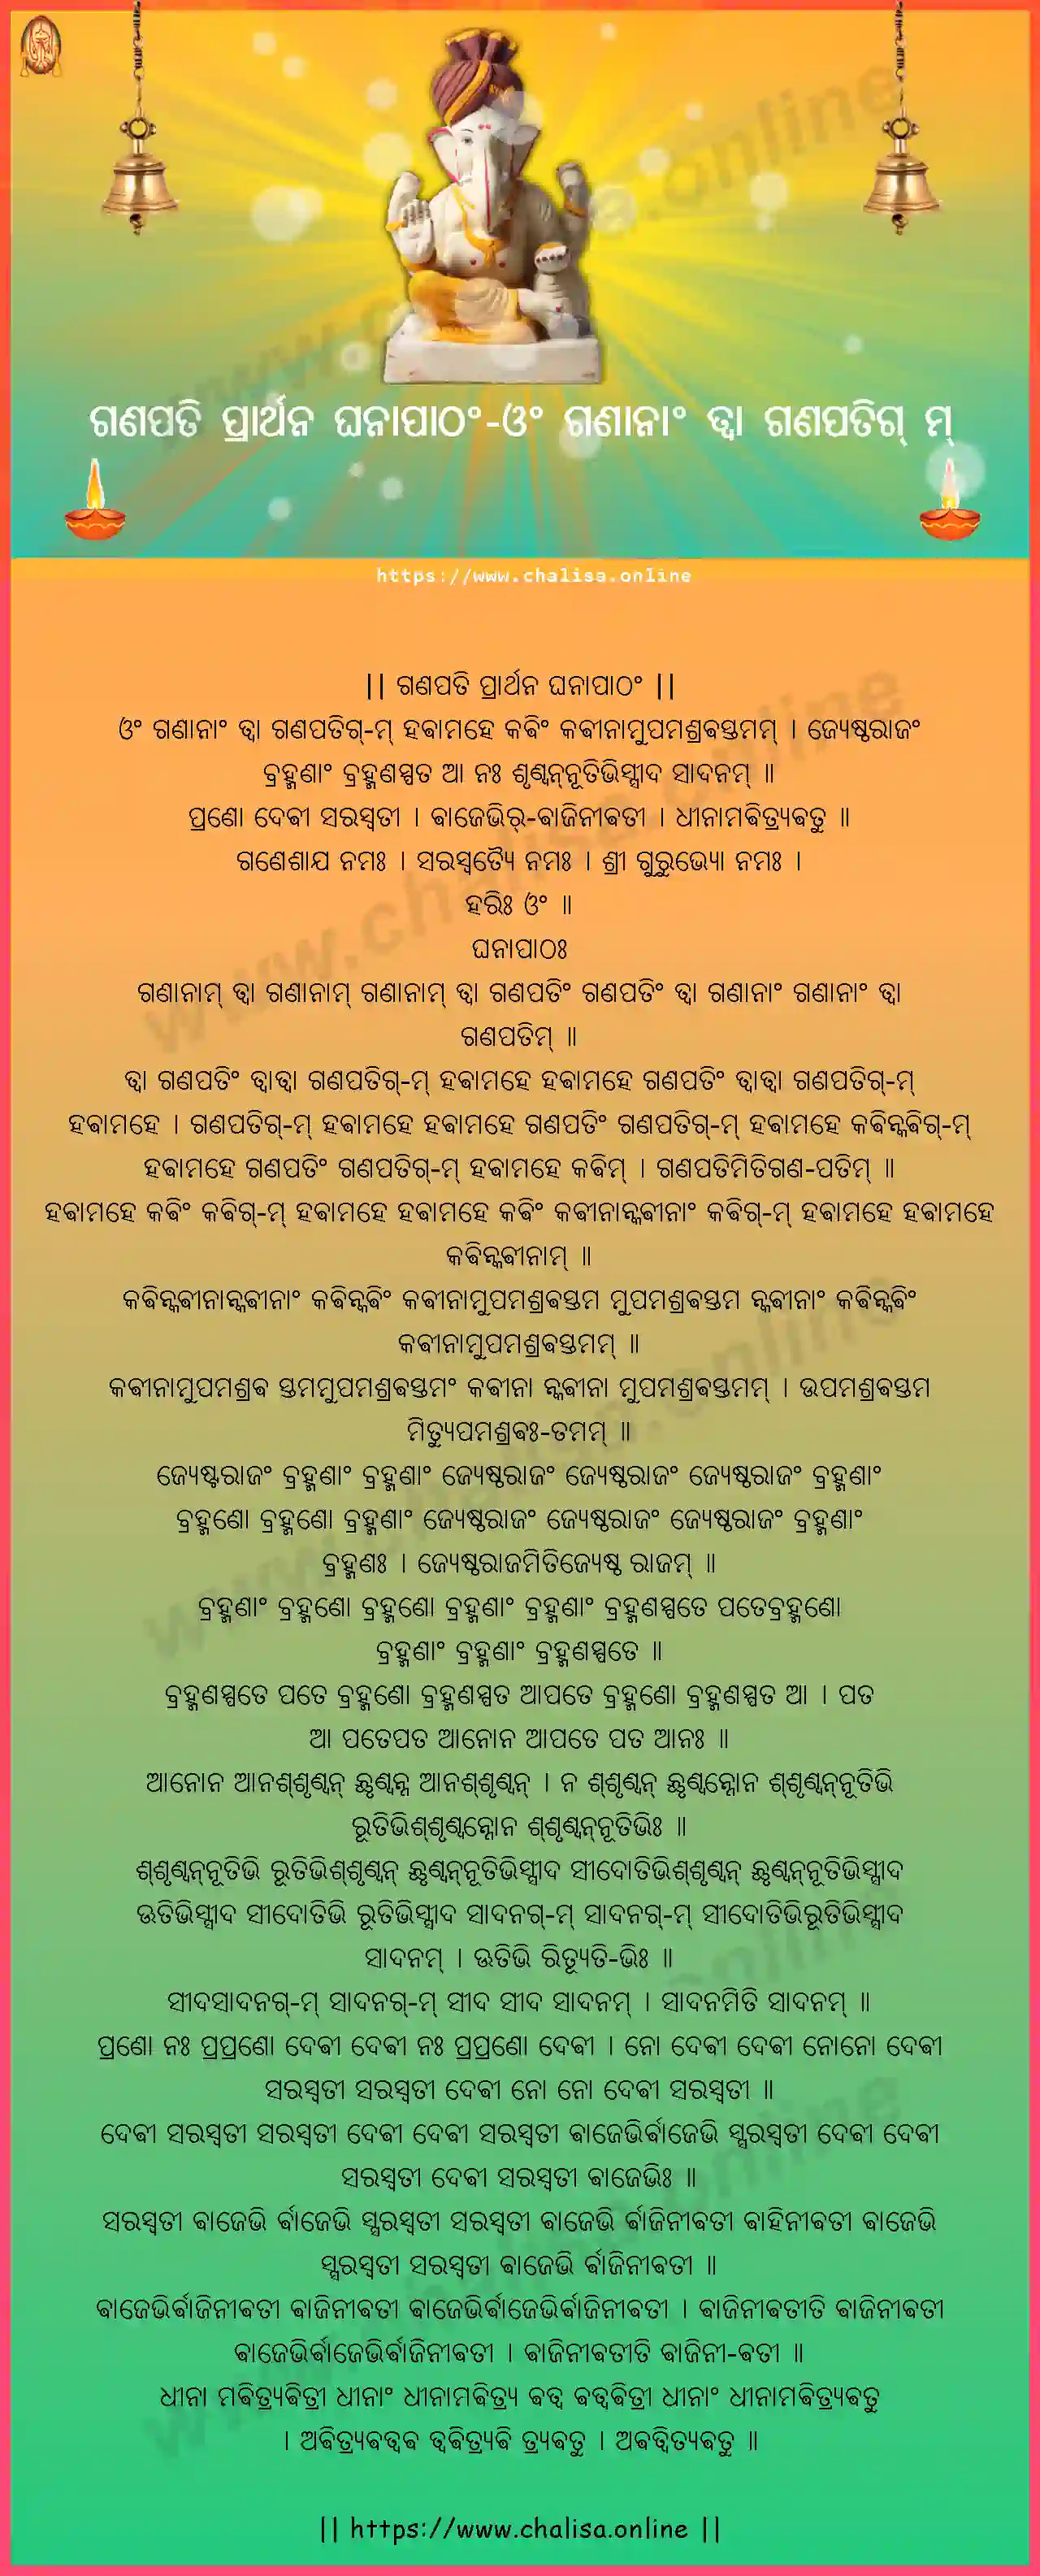 om-gananam-tva-ganapati-prarthana-ghanapatham-oriya-oriya-lyrics-download